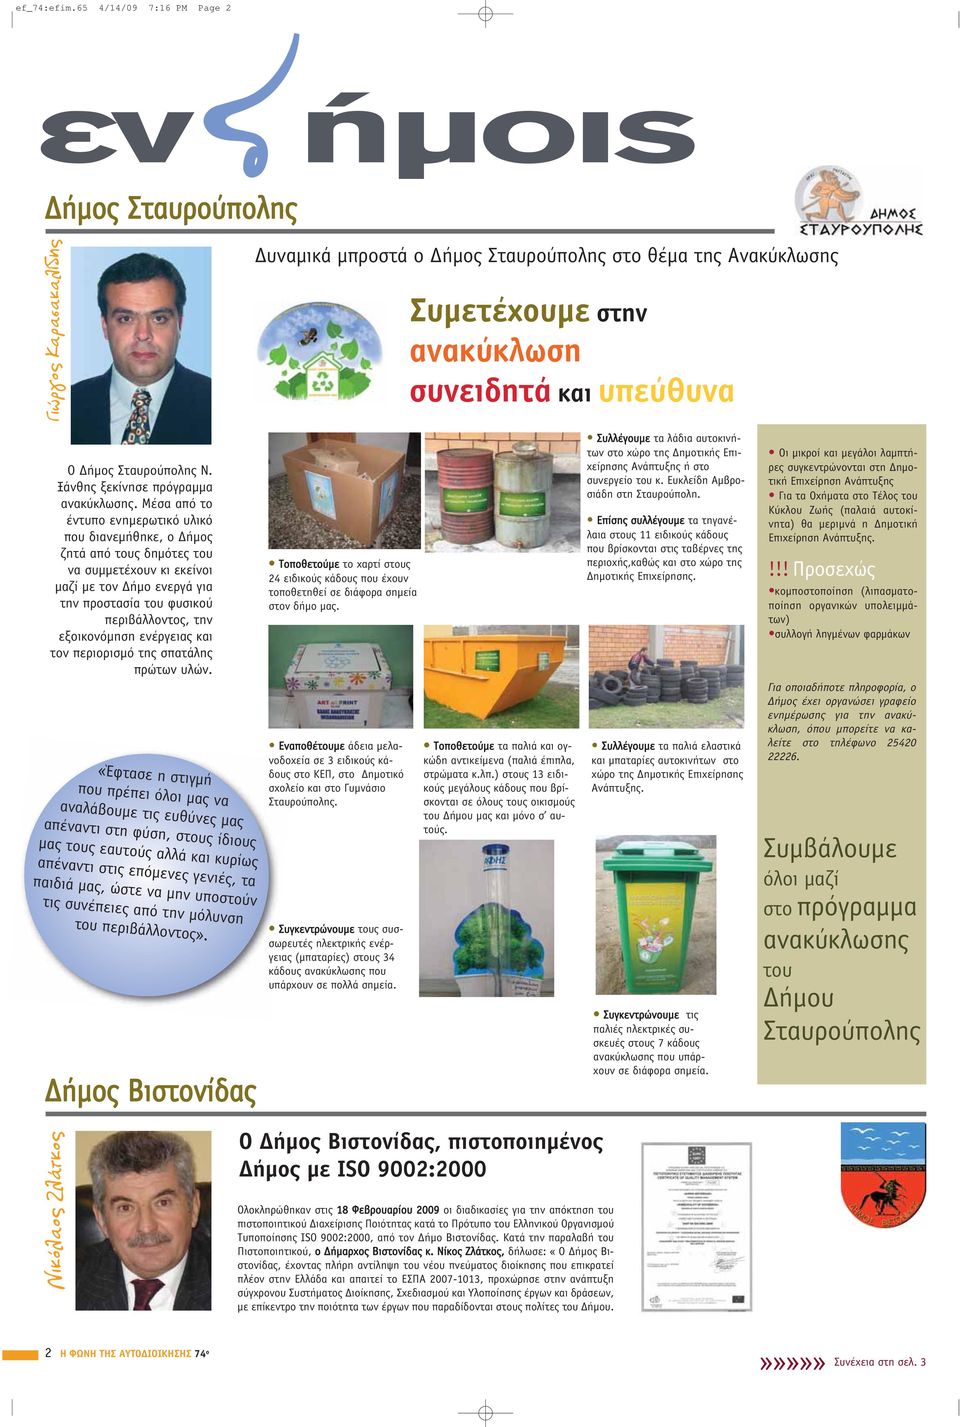 Σταυρούπολης Ν. Ξάνθης ξεκίνησε πρόγραμμα ανακύκλωσης.